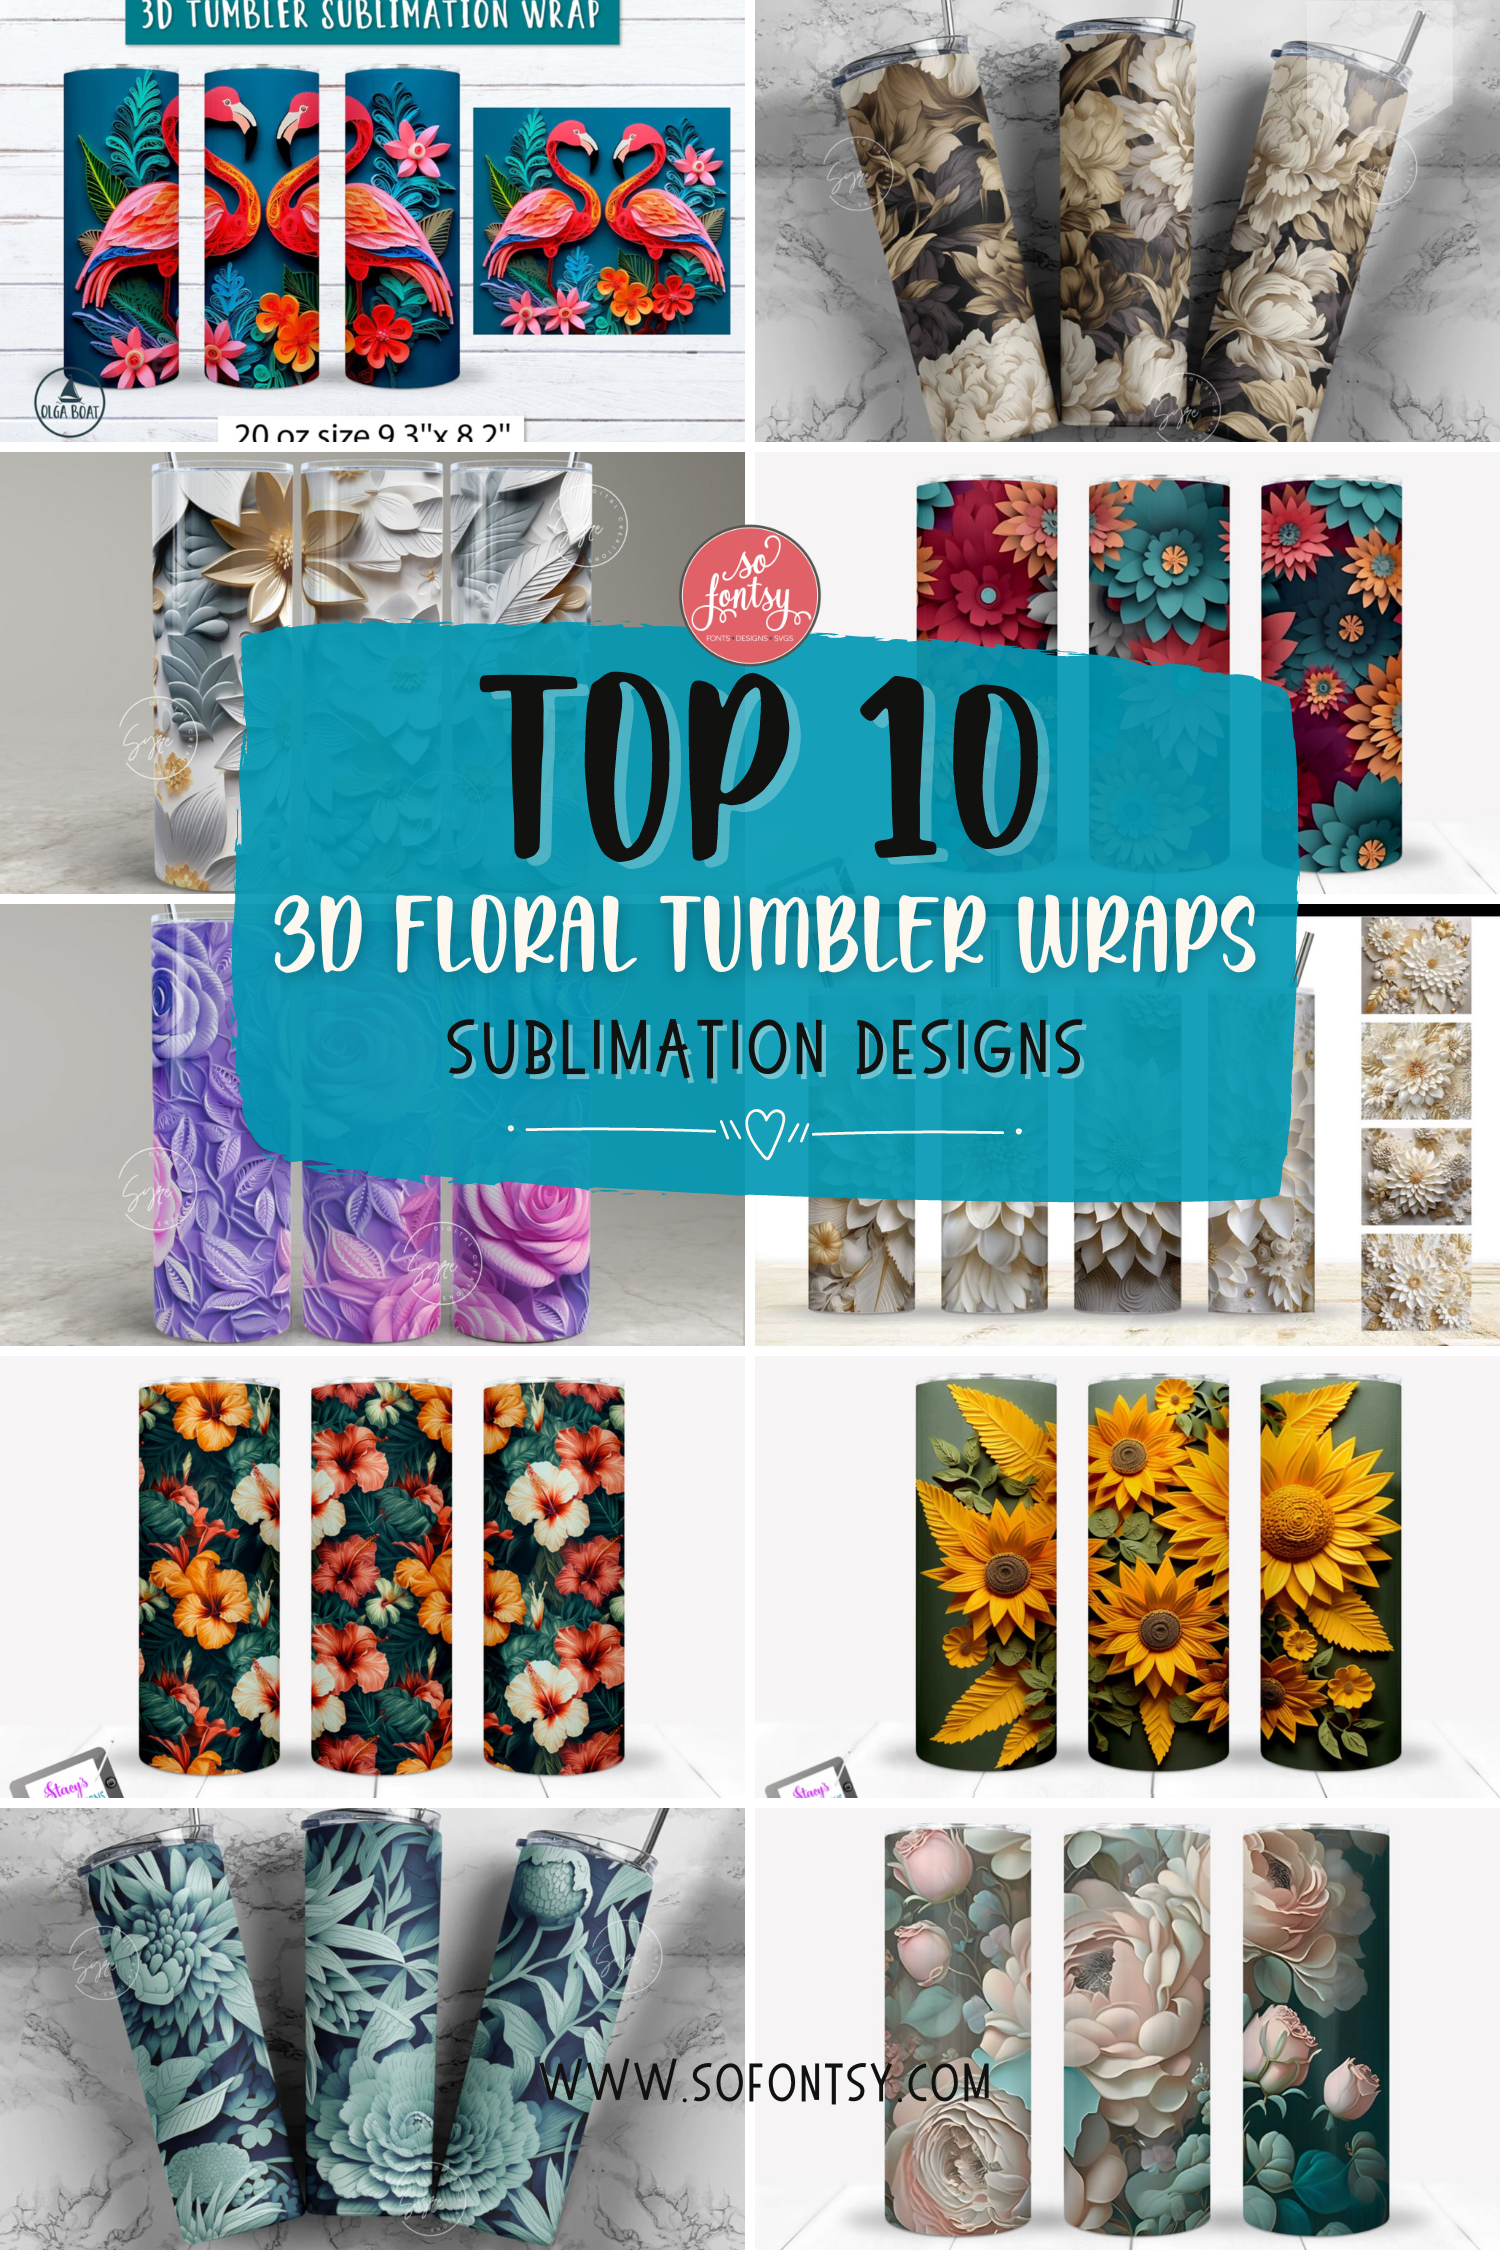 Top 10 3D Floral Tumbler Wraps for Sublimation